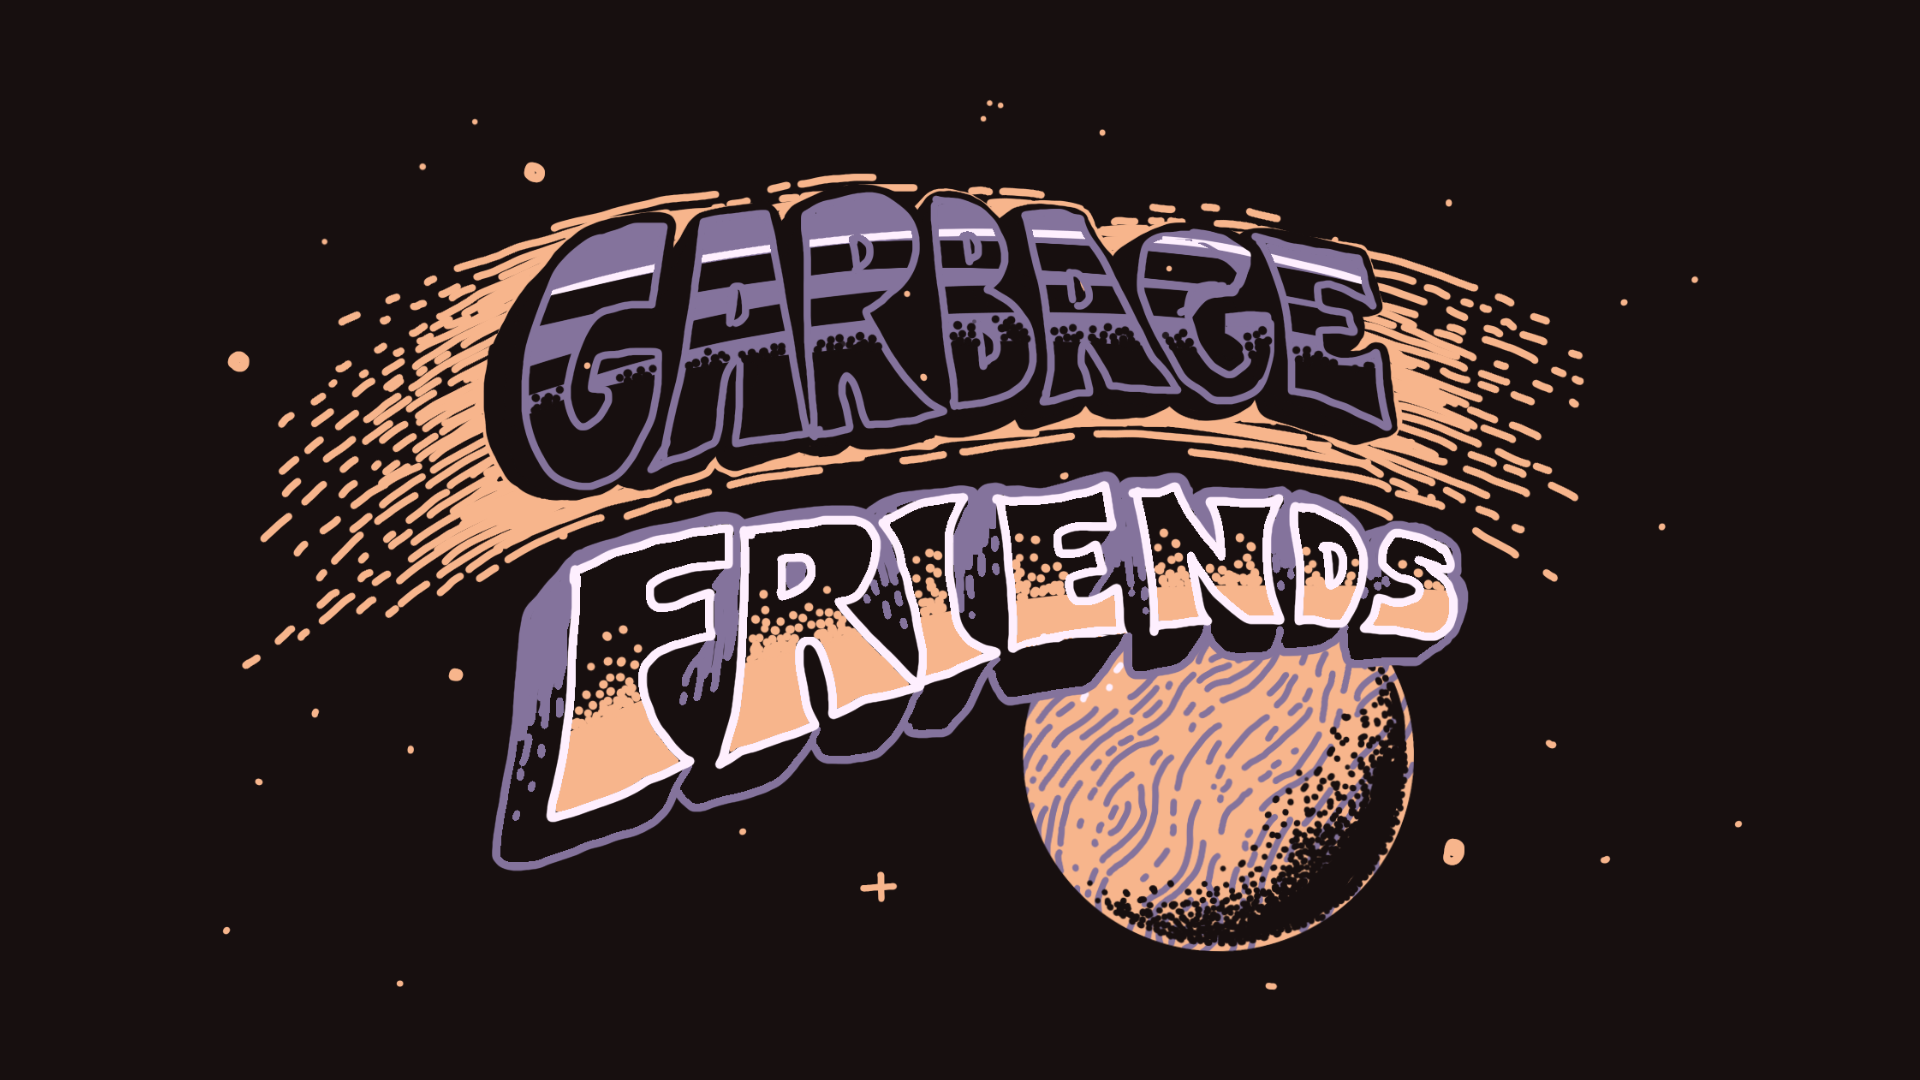 Garbage Friends